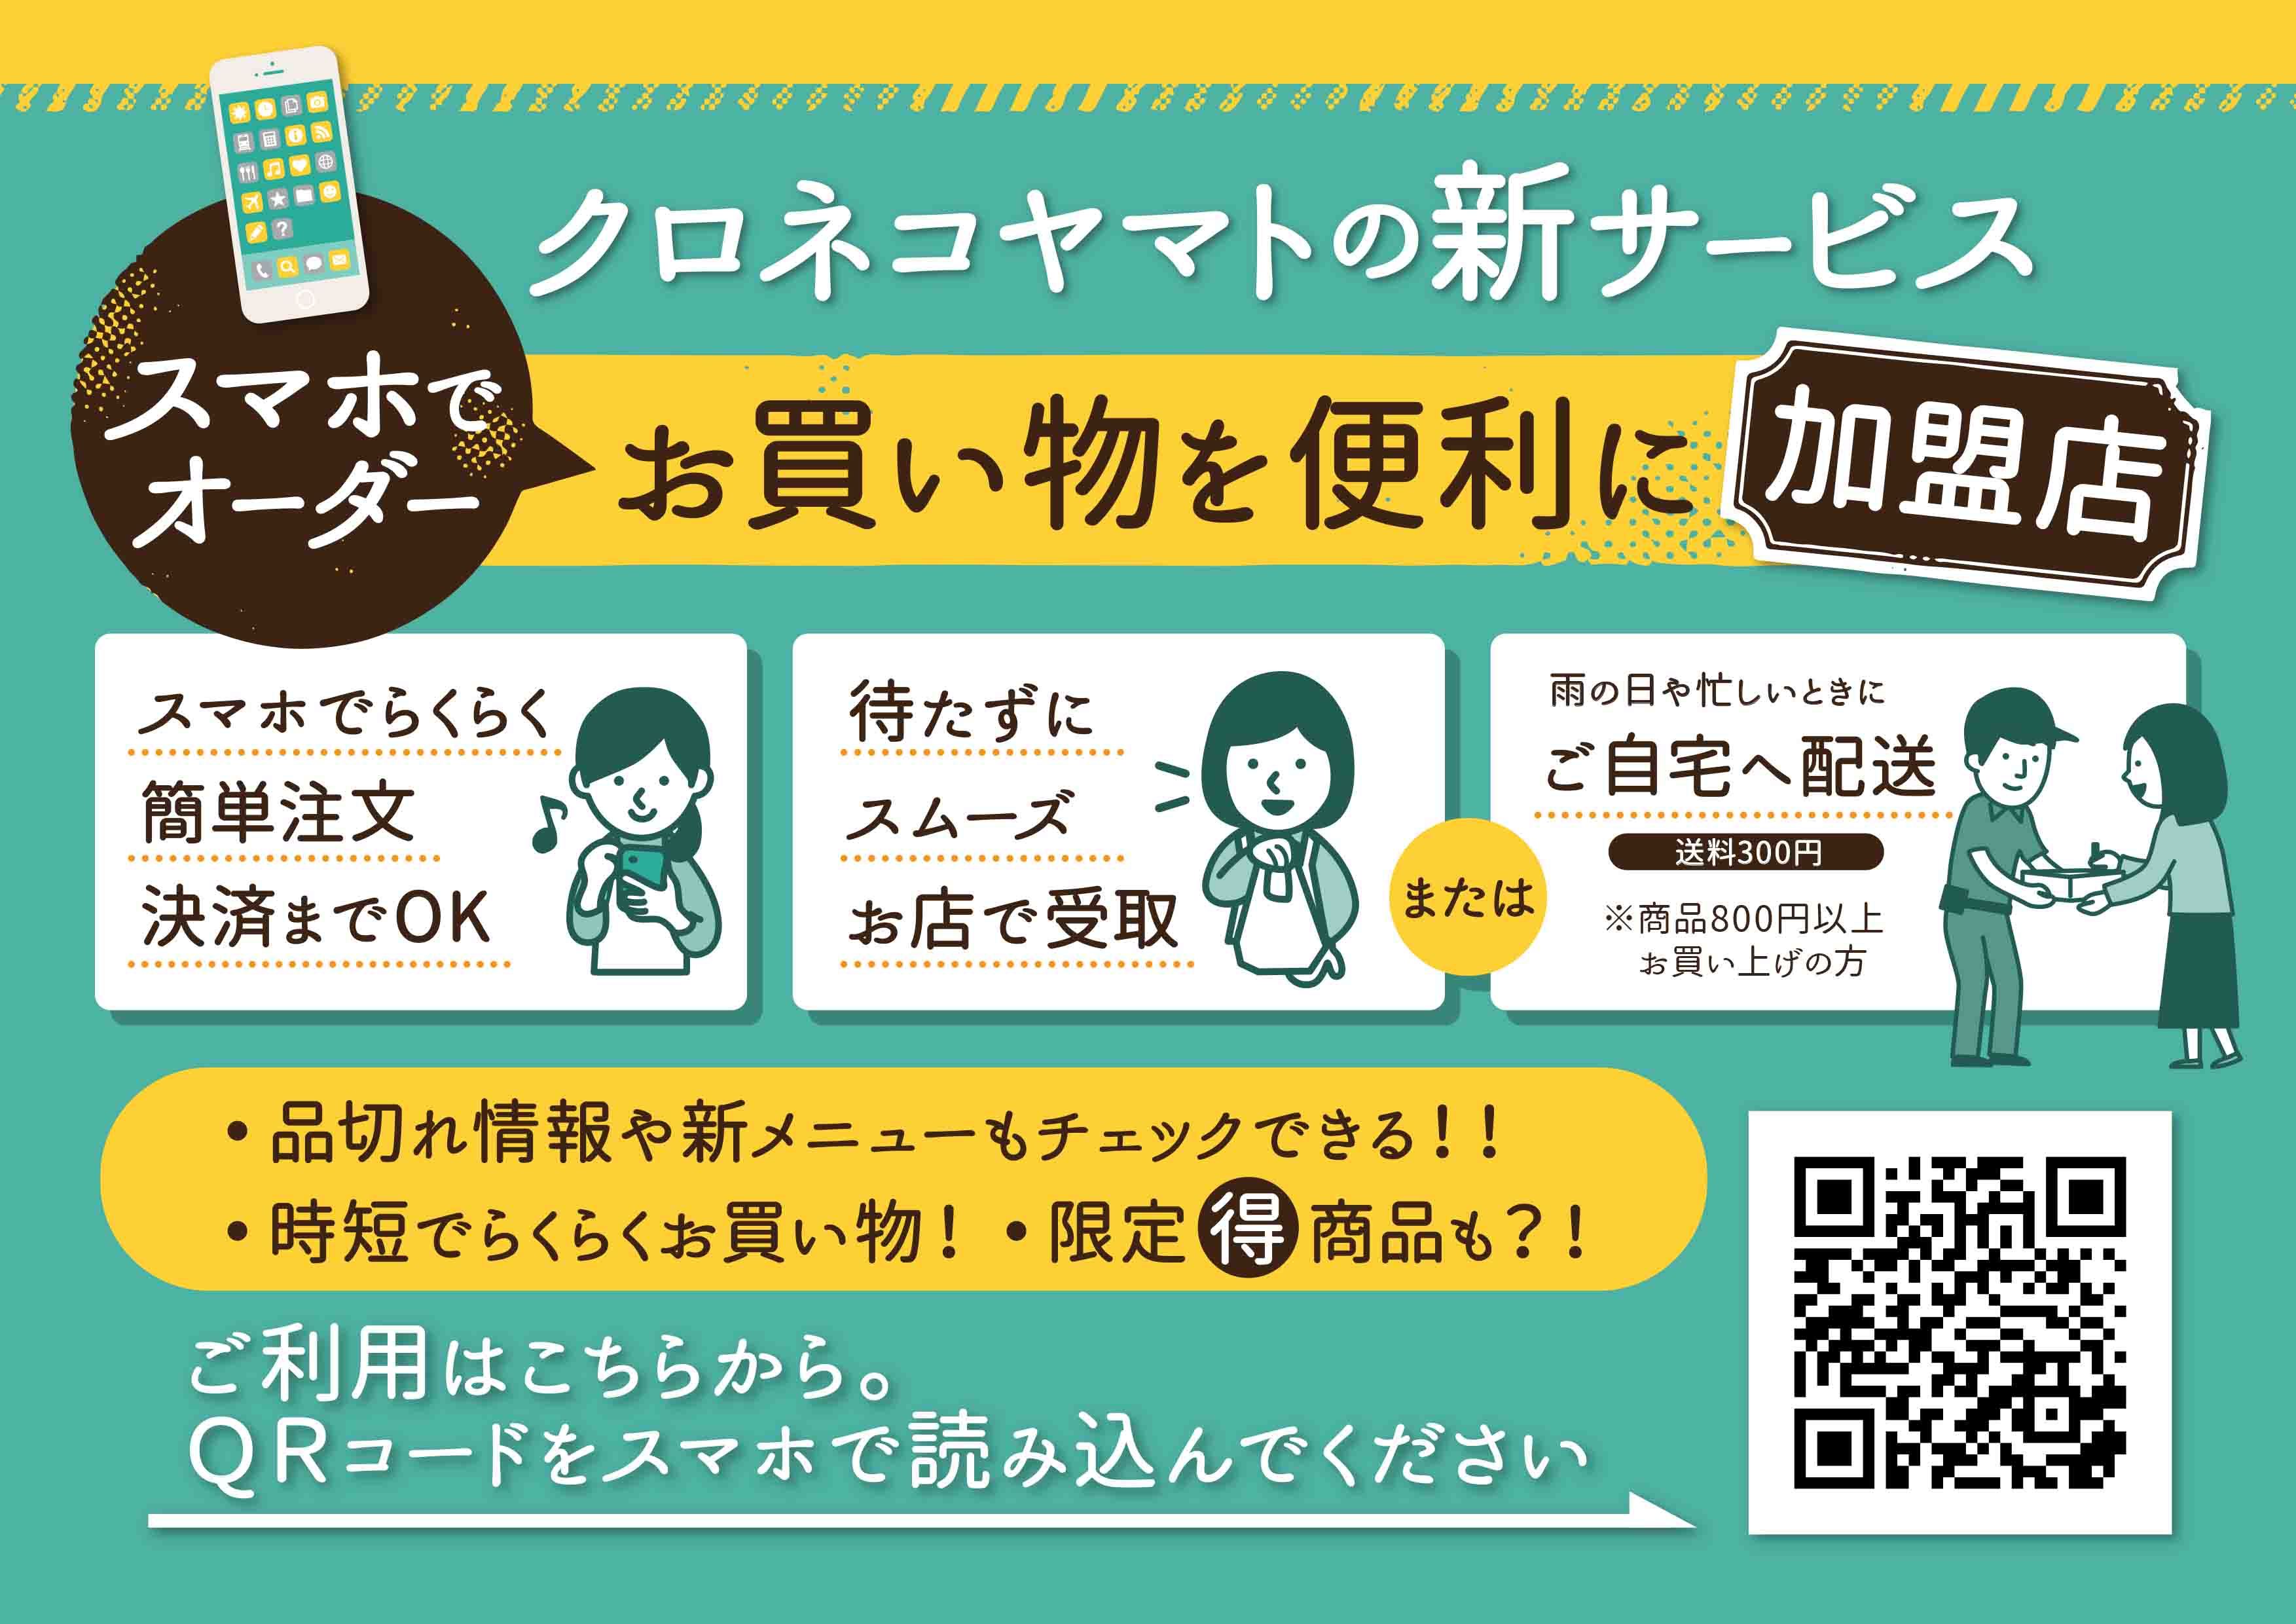 ヤマトモバイルオーダー」 がキャンペーン中なので、商品を追加しました！ – 窪田屋酒店 | 酒類